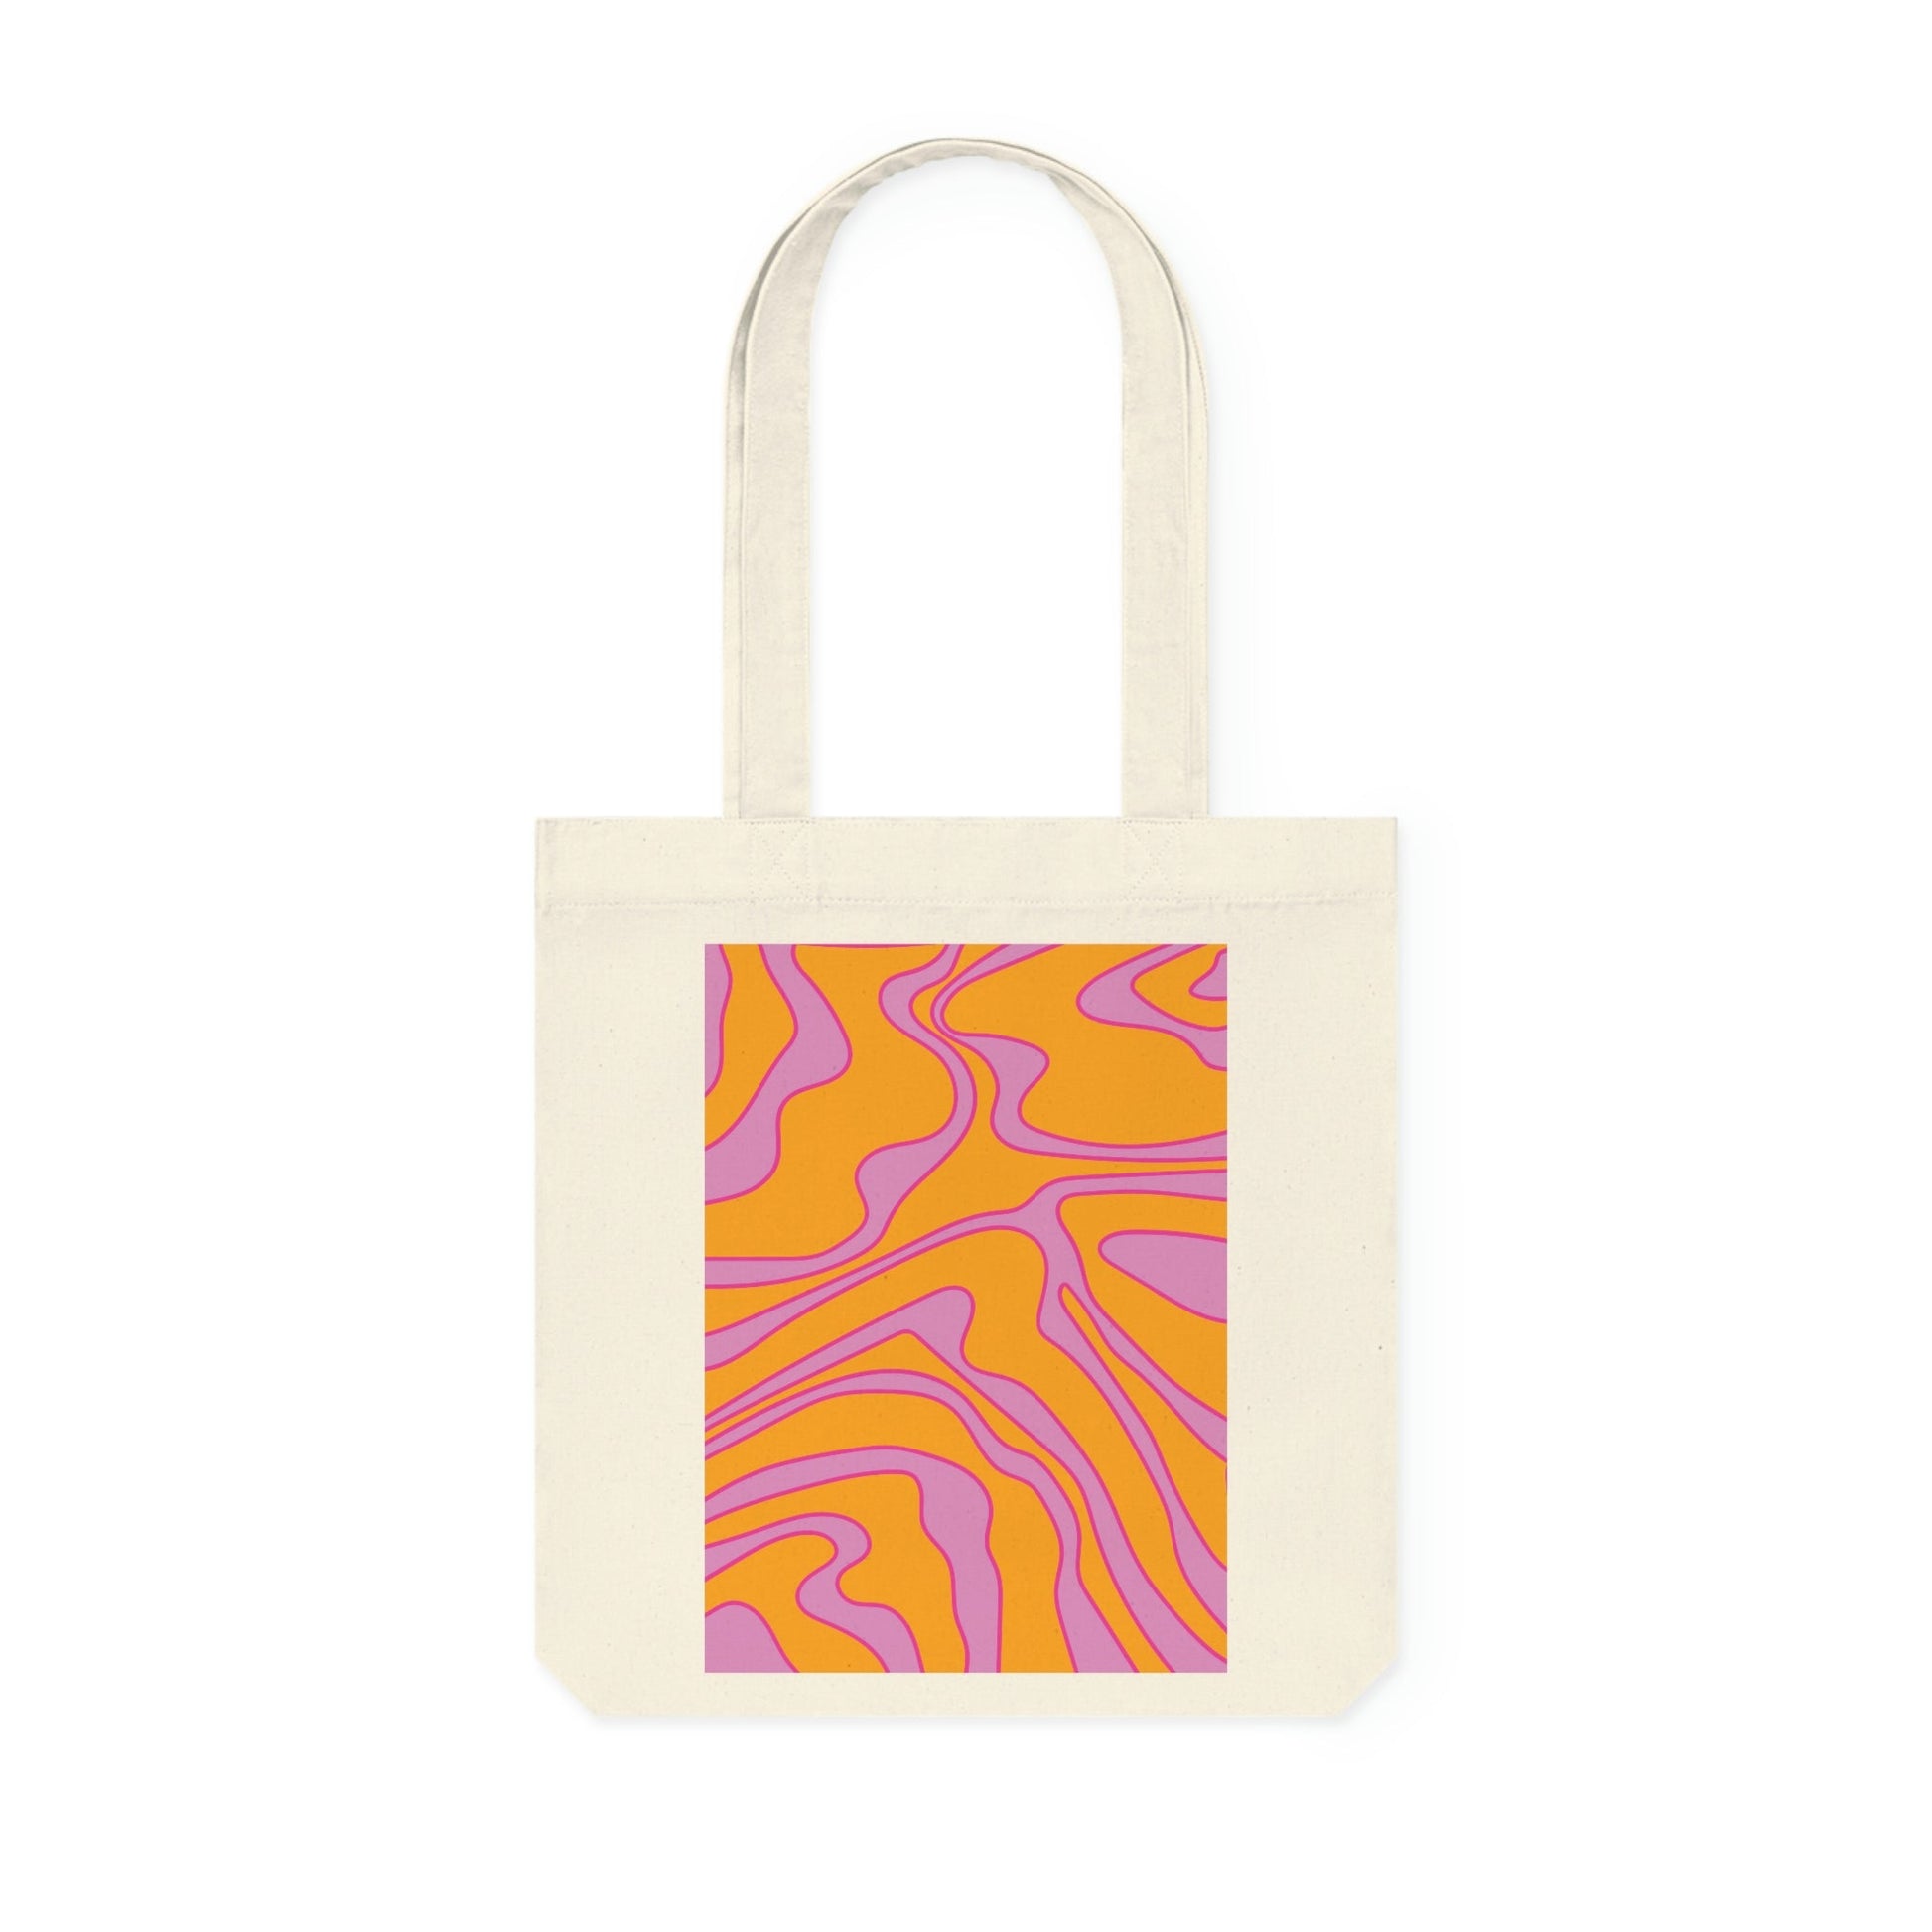 Little by Little - by Little Lady Funky tote bag 'Swirls' - orange, purple, pink